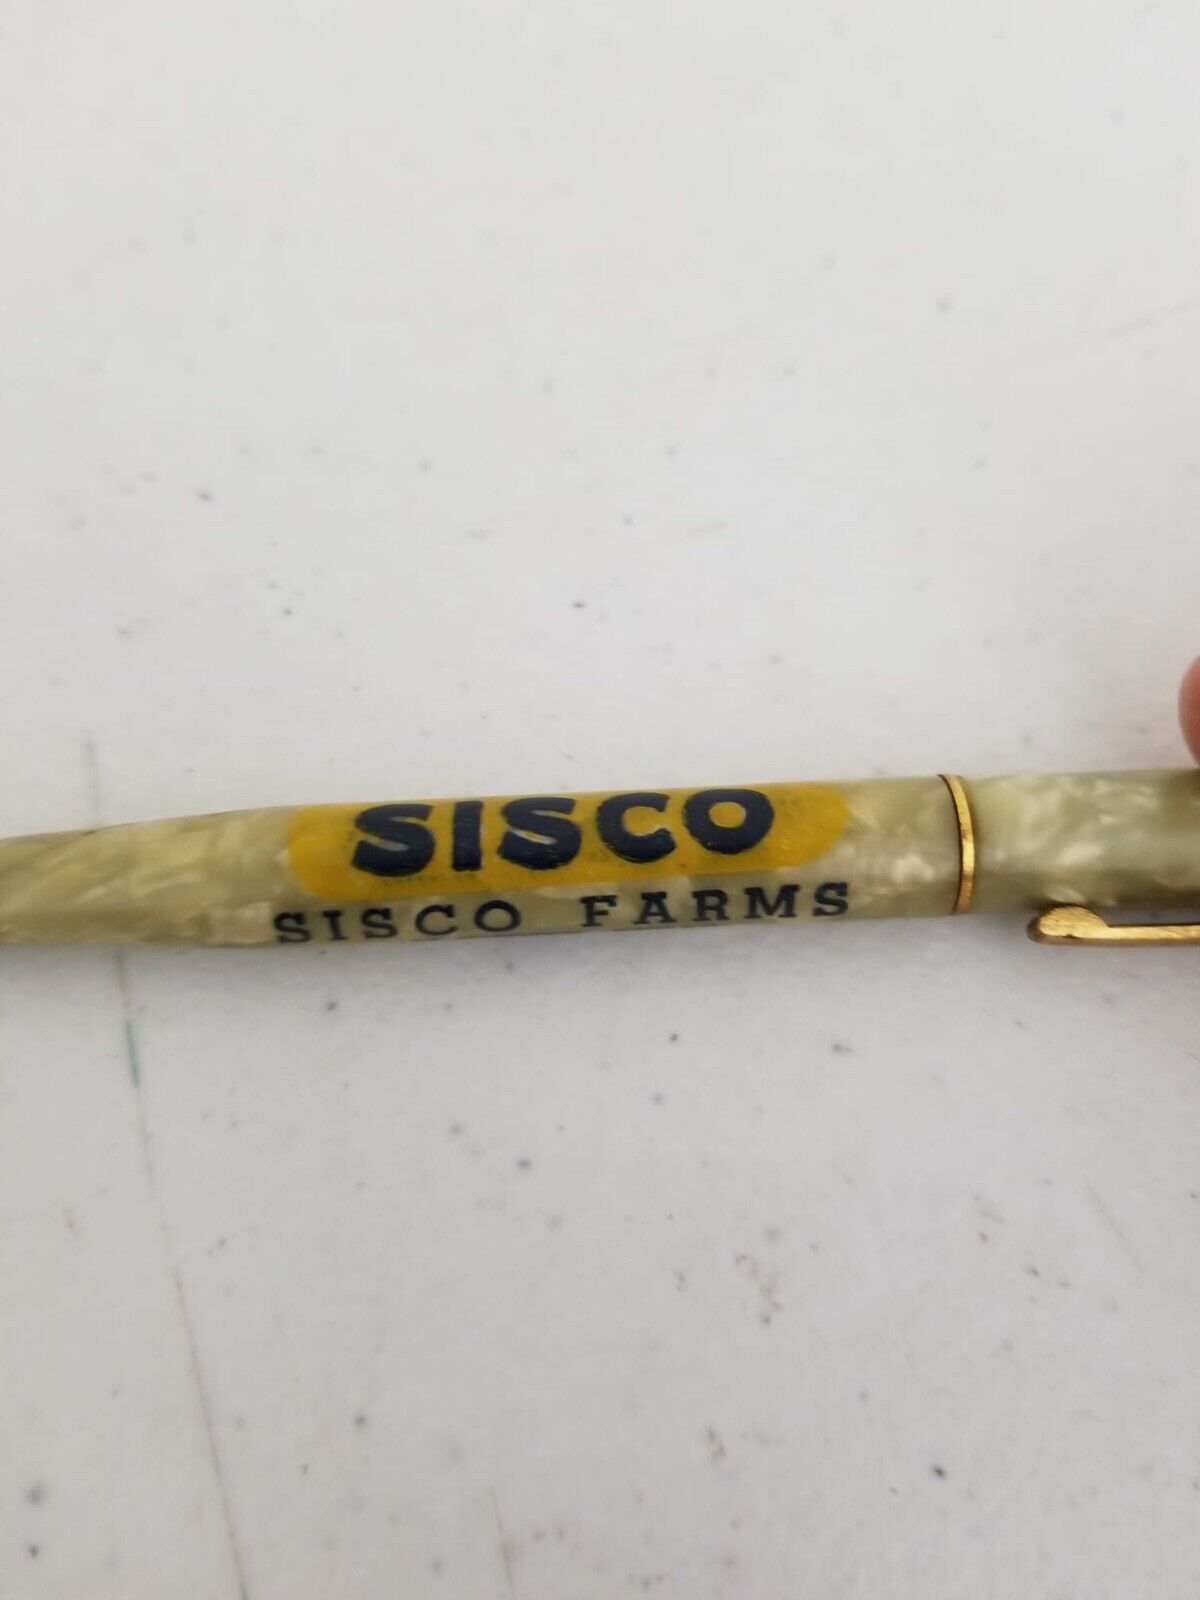 Rare Vintage SISCO Farms Promotional Pen - Collectible Texas Hybrid Seeds Advertising Memorabilia - TreasuTiques